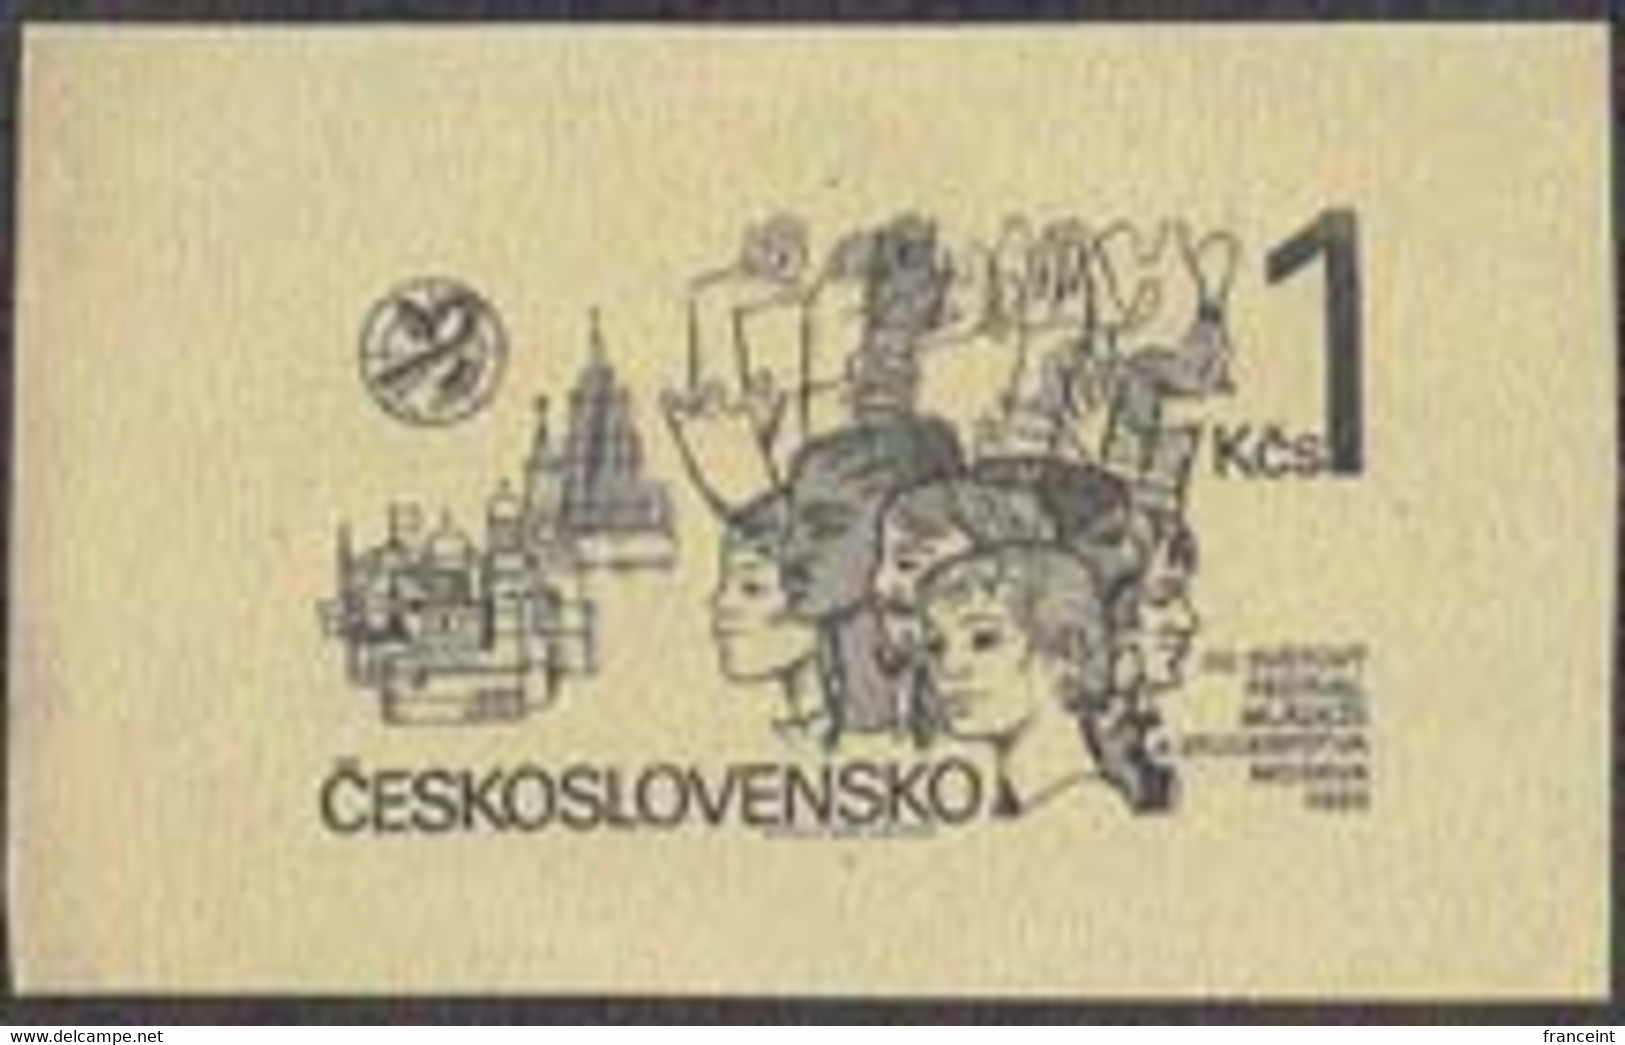 CZECHOSLOVAKIA (1985) Students With Hands Raised. Die Proof In Black. Scott No 2568, Yvert No 2637. - Proeven & Herdrukken